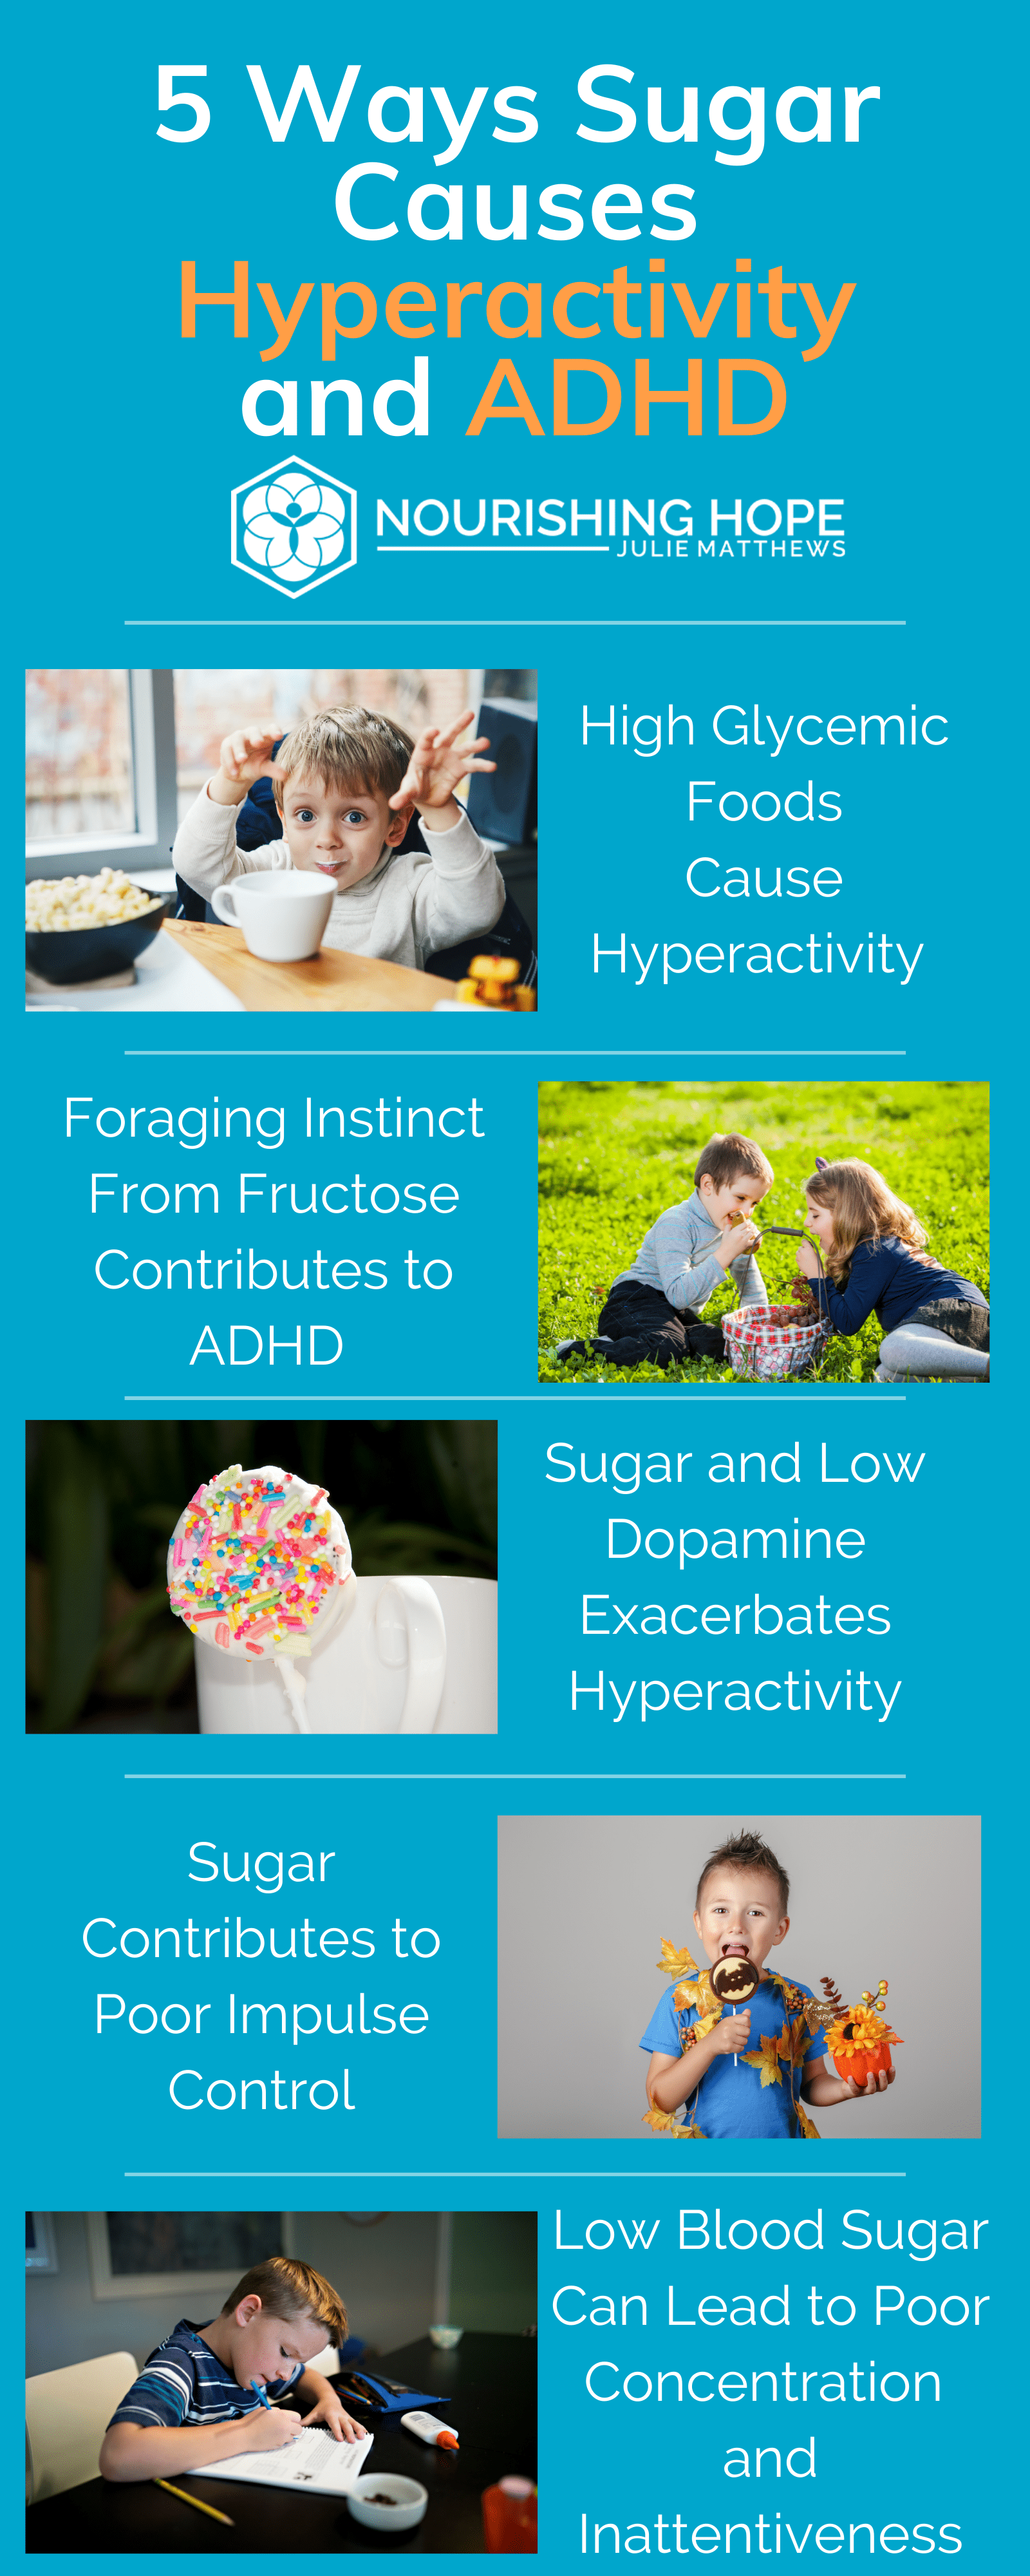 Hyperactivity and ADHD Sugar